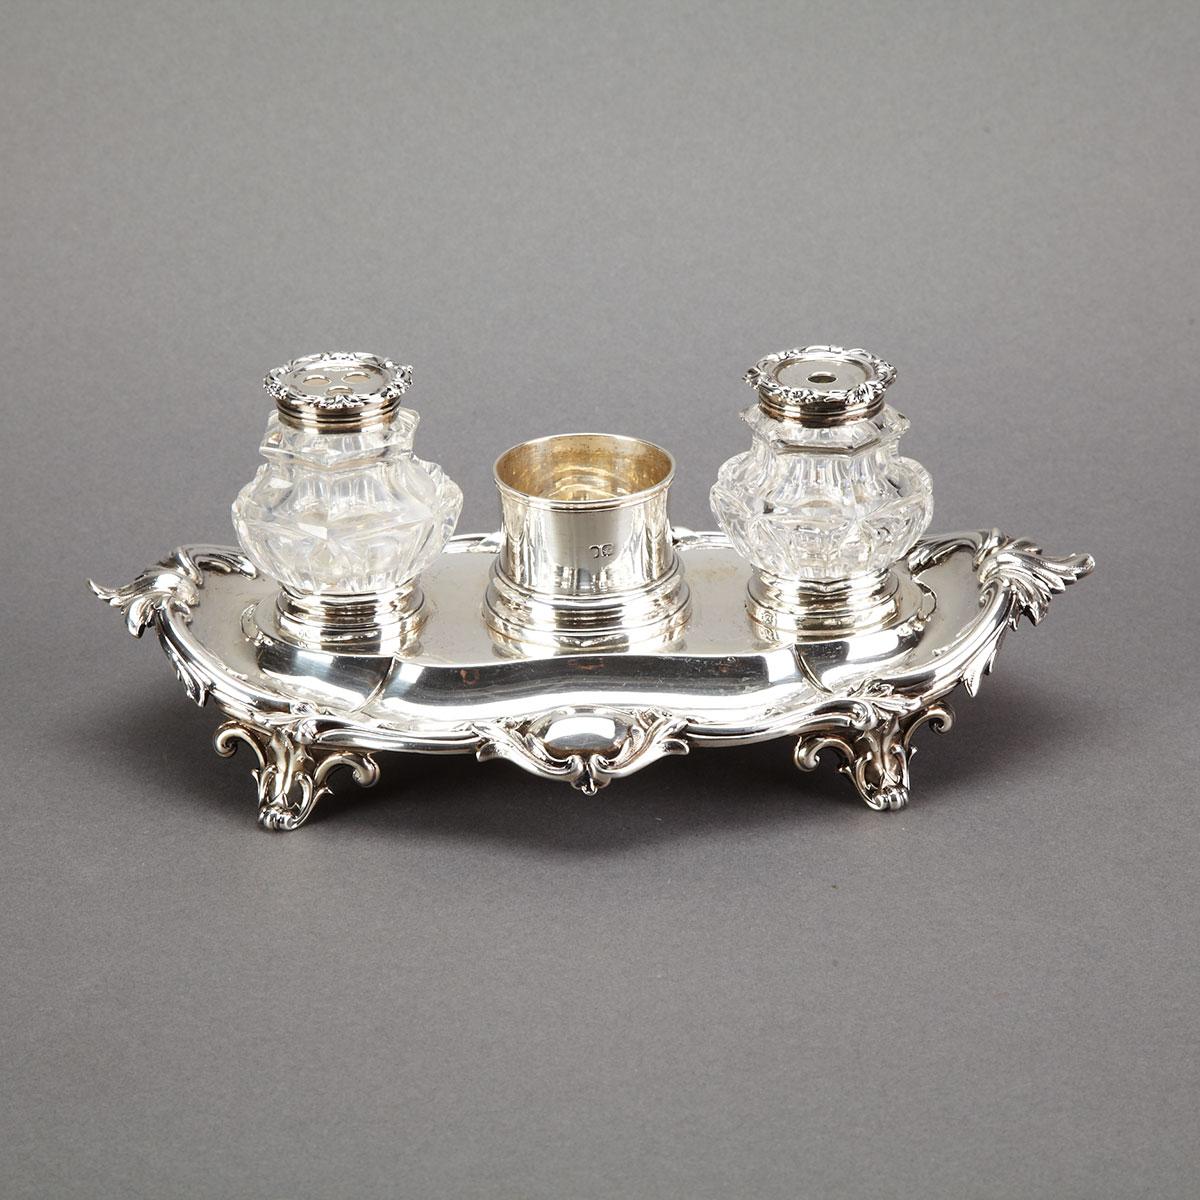 Victorian Silver Inkstand, Edward, Edward, John & William Barnard, London, 1840